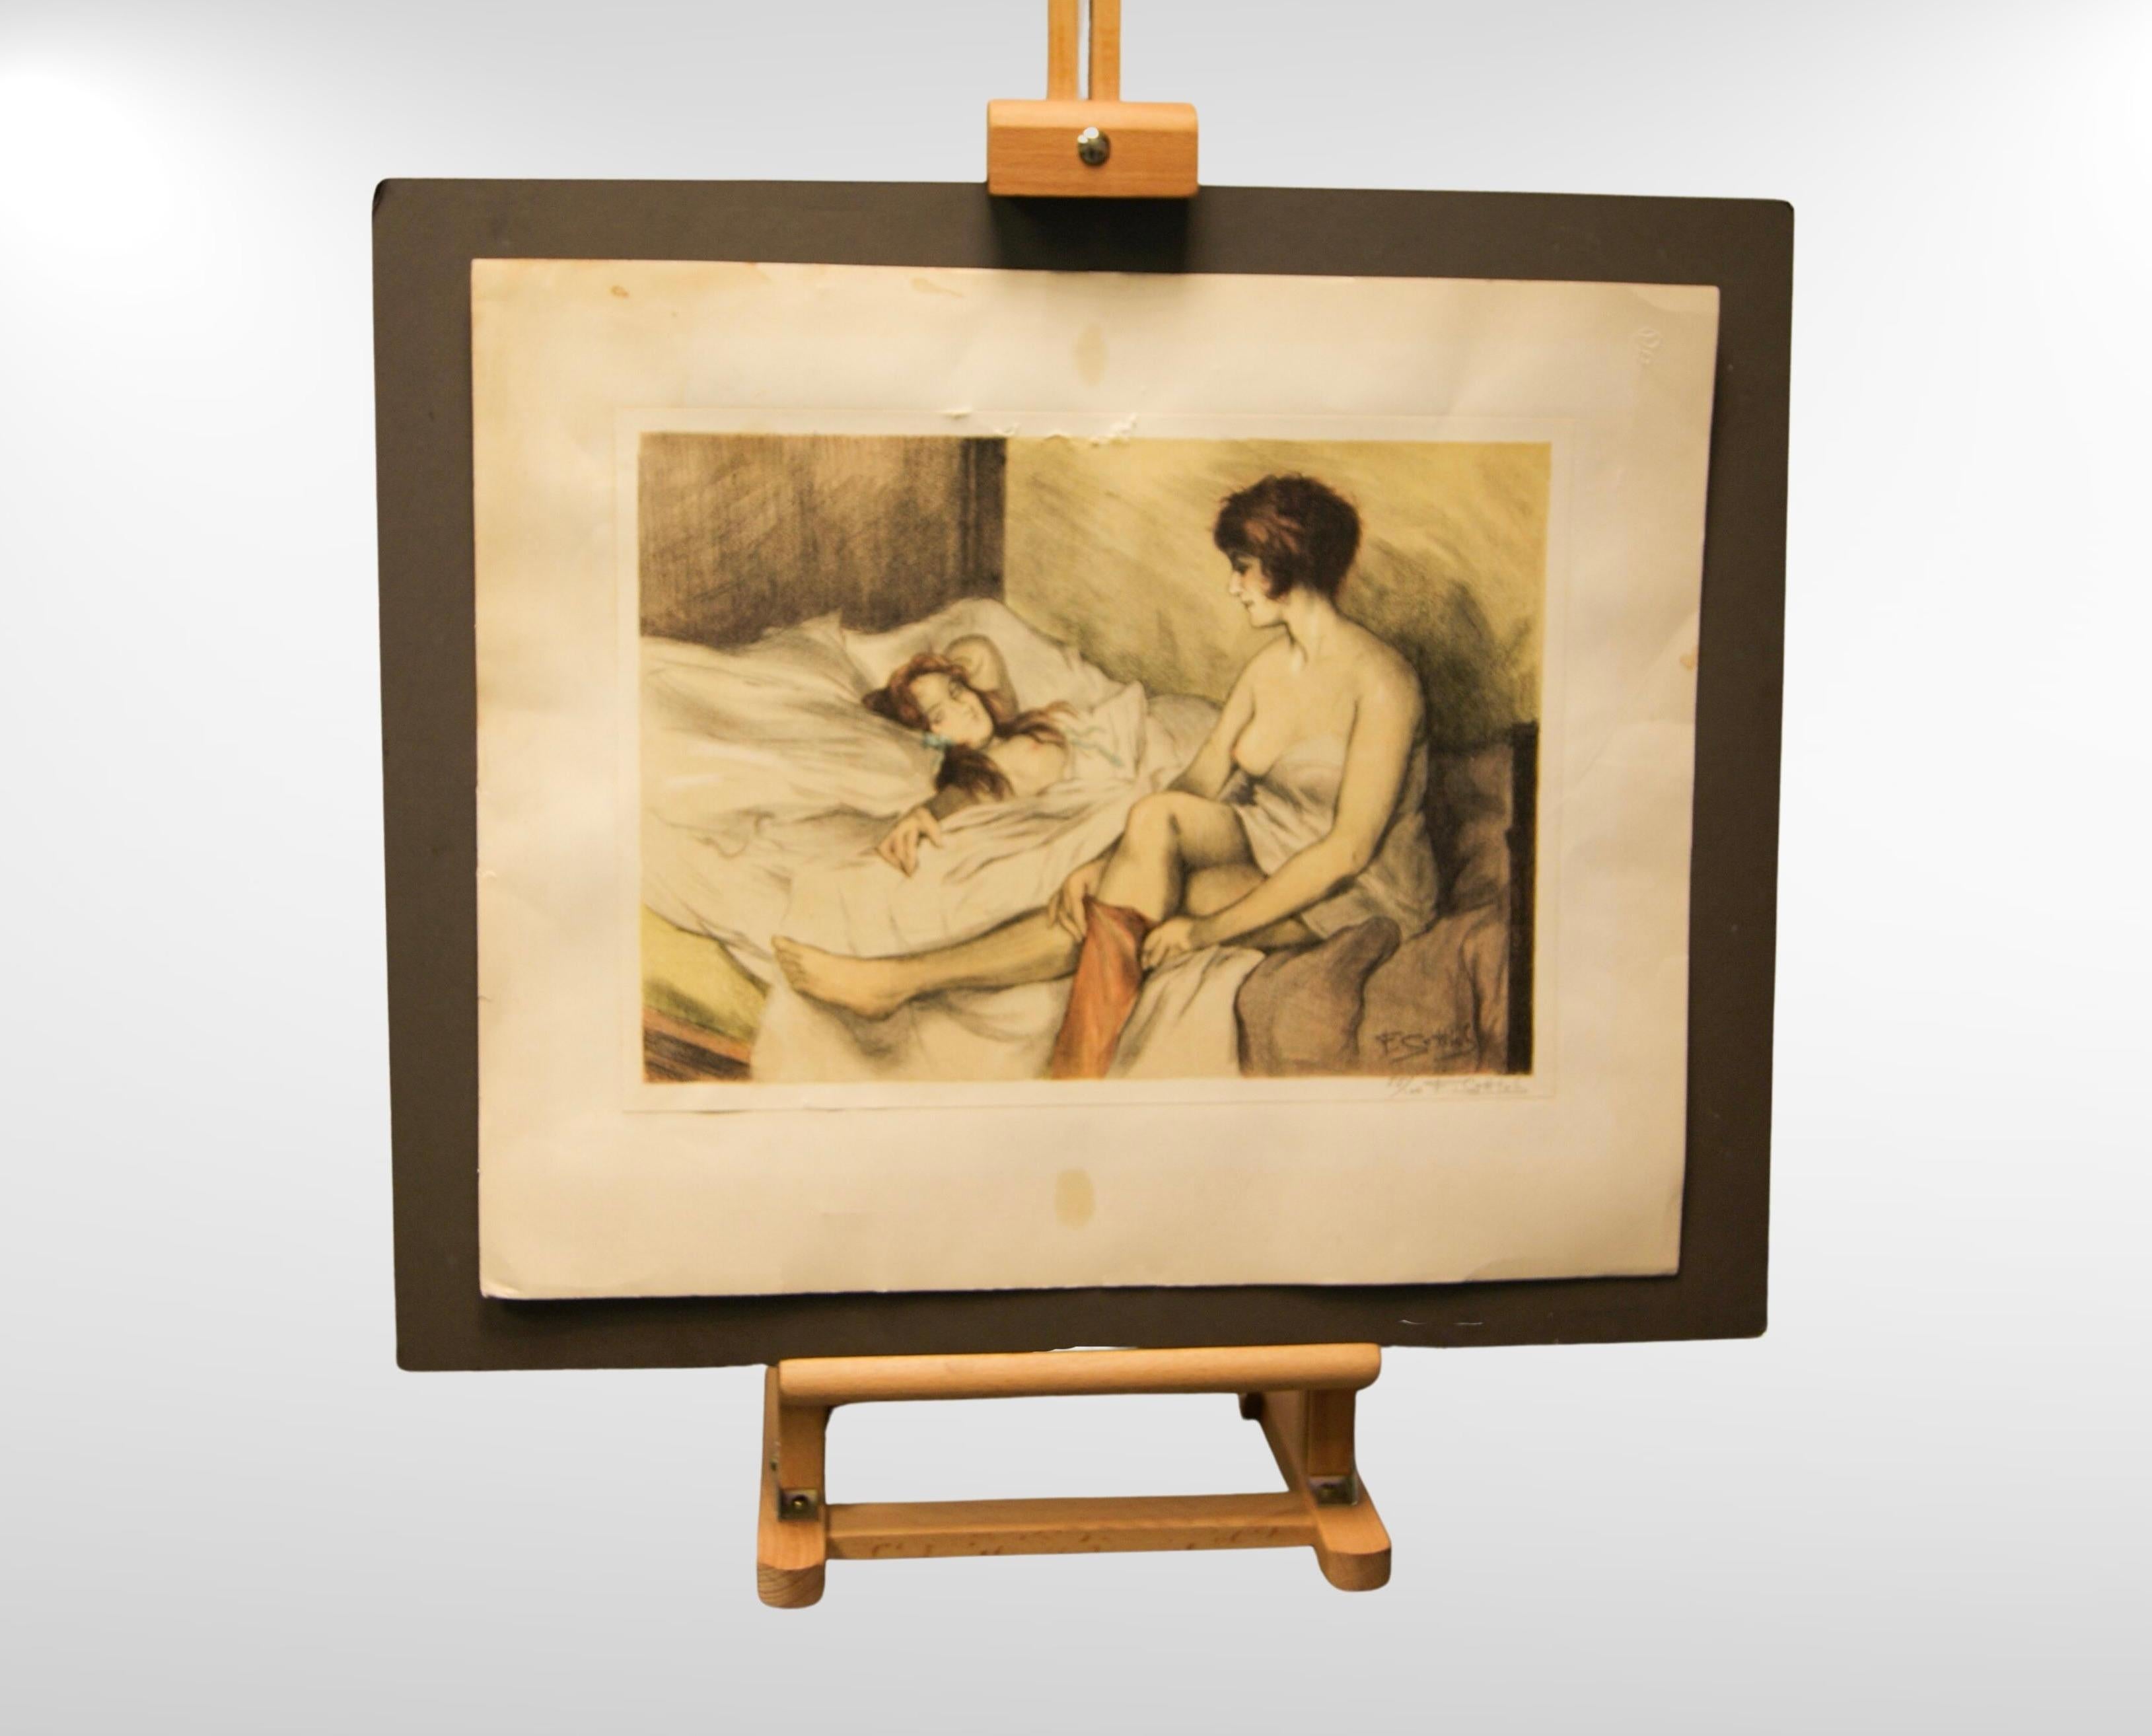 1930s Nude Lesbian Art, Colour Lithograph 55/100 Artist Signed.
Lithographie en couleurs représentant un couple de lesbiennes semi-nues dans un cadre intime.
Très séduisant.
Épreuve lithographique en couleurs sur papier d'artiste, montée sur un